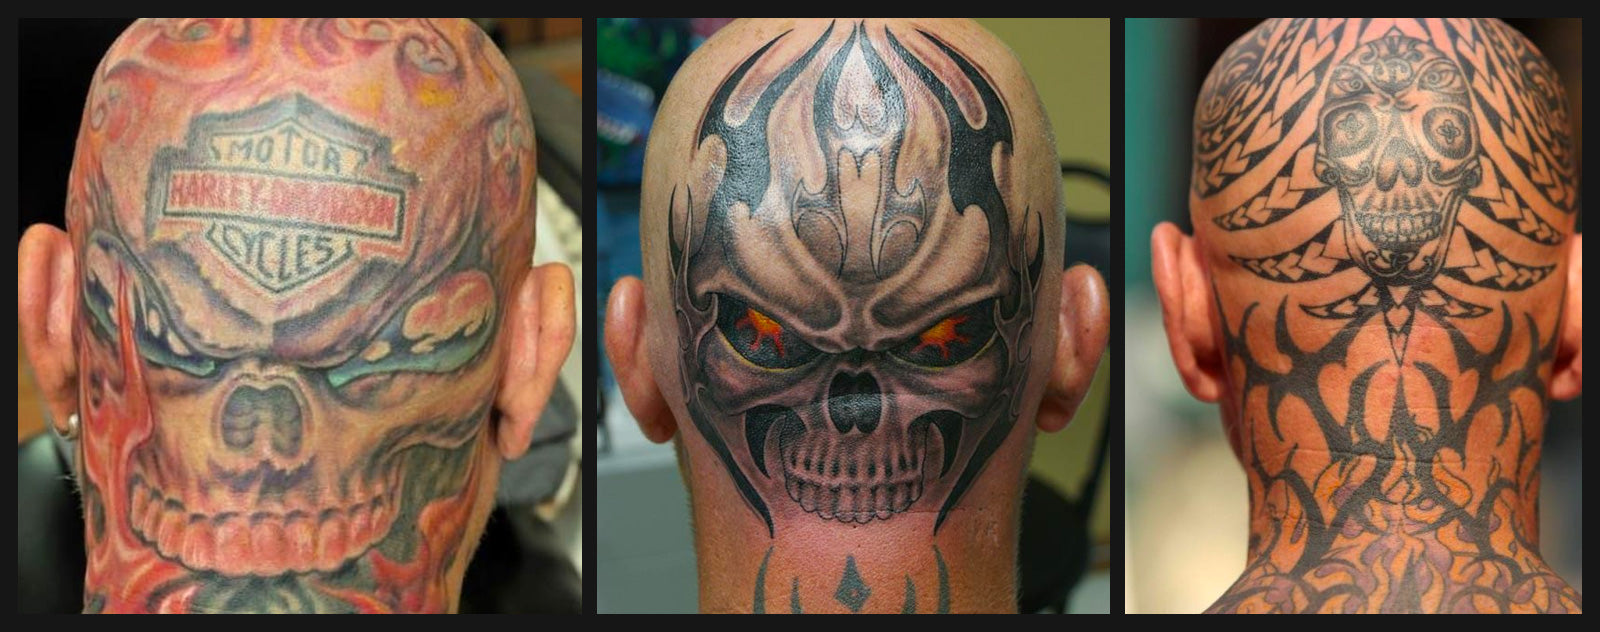 T-shirt Homme Tattoo Motard [Tête de Mort, Skull, Tatouage Moto